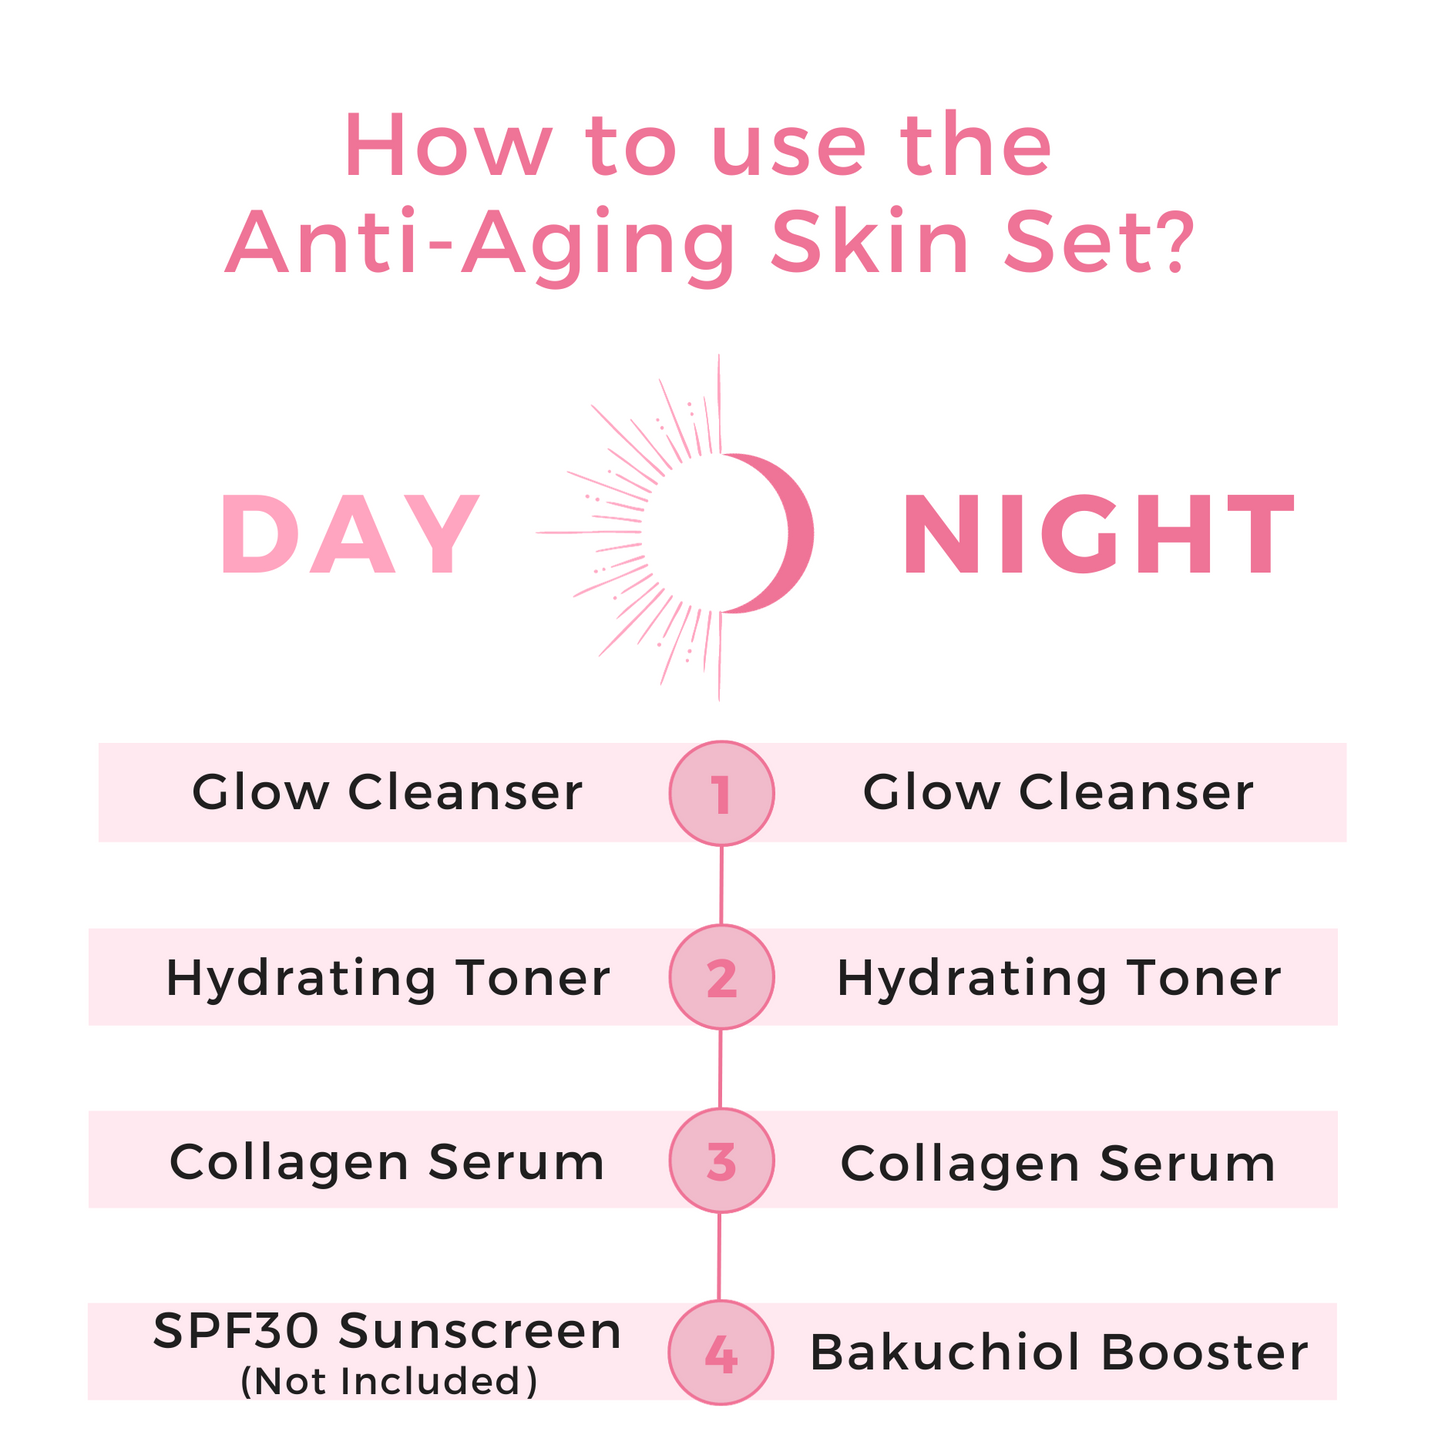 Anti-Aging Skin Set